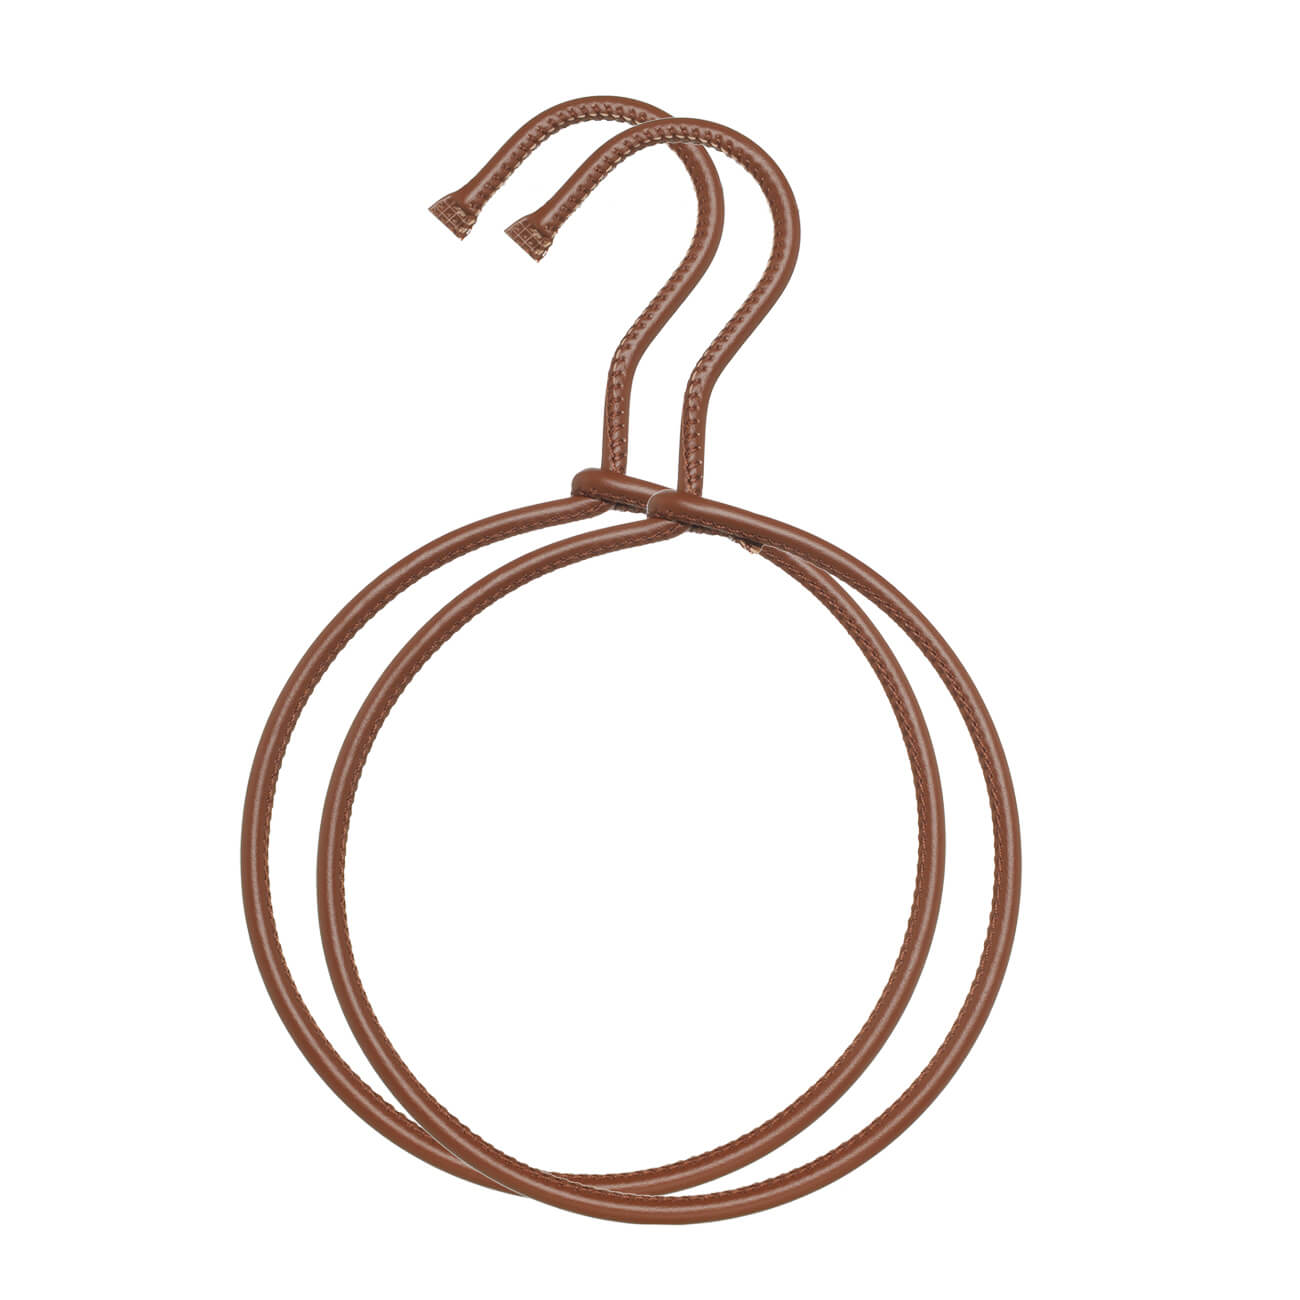 Вешалка для шарфов/платков, 14х23 см, 2 шт, искусственная кожа, коричневая, Leather house изображение № 1